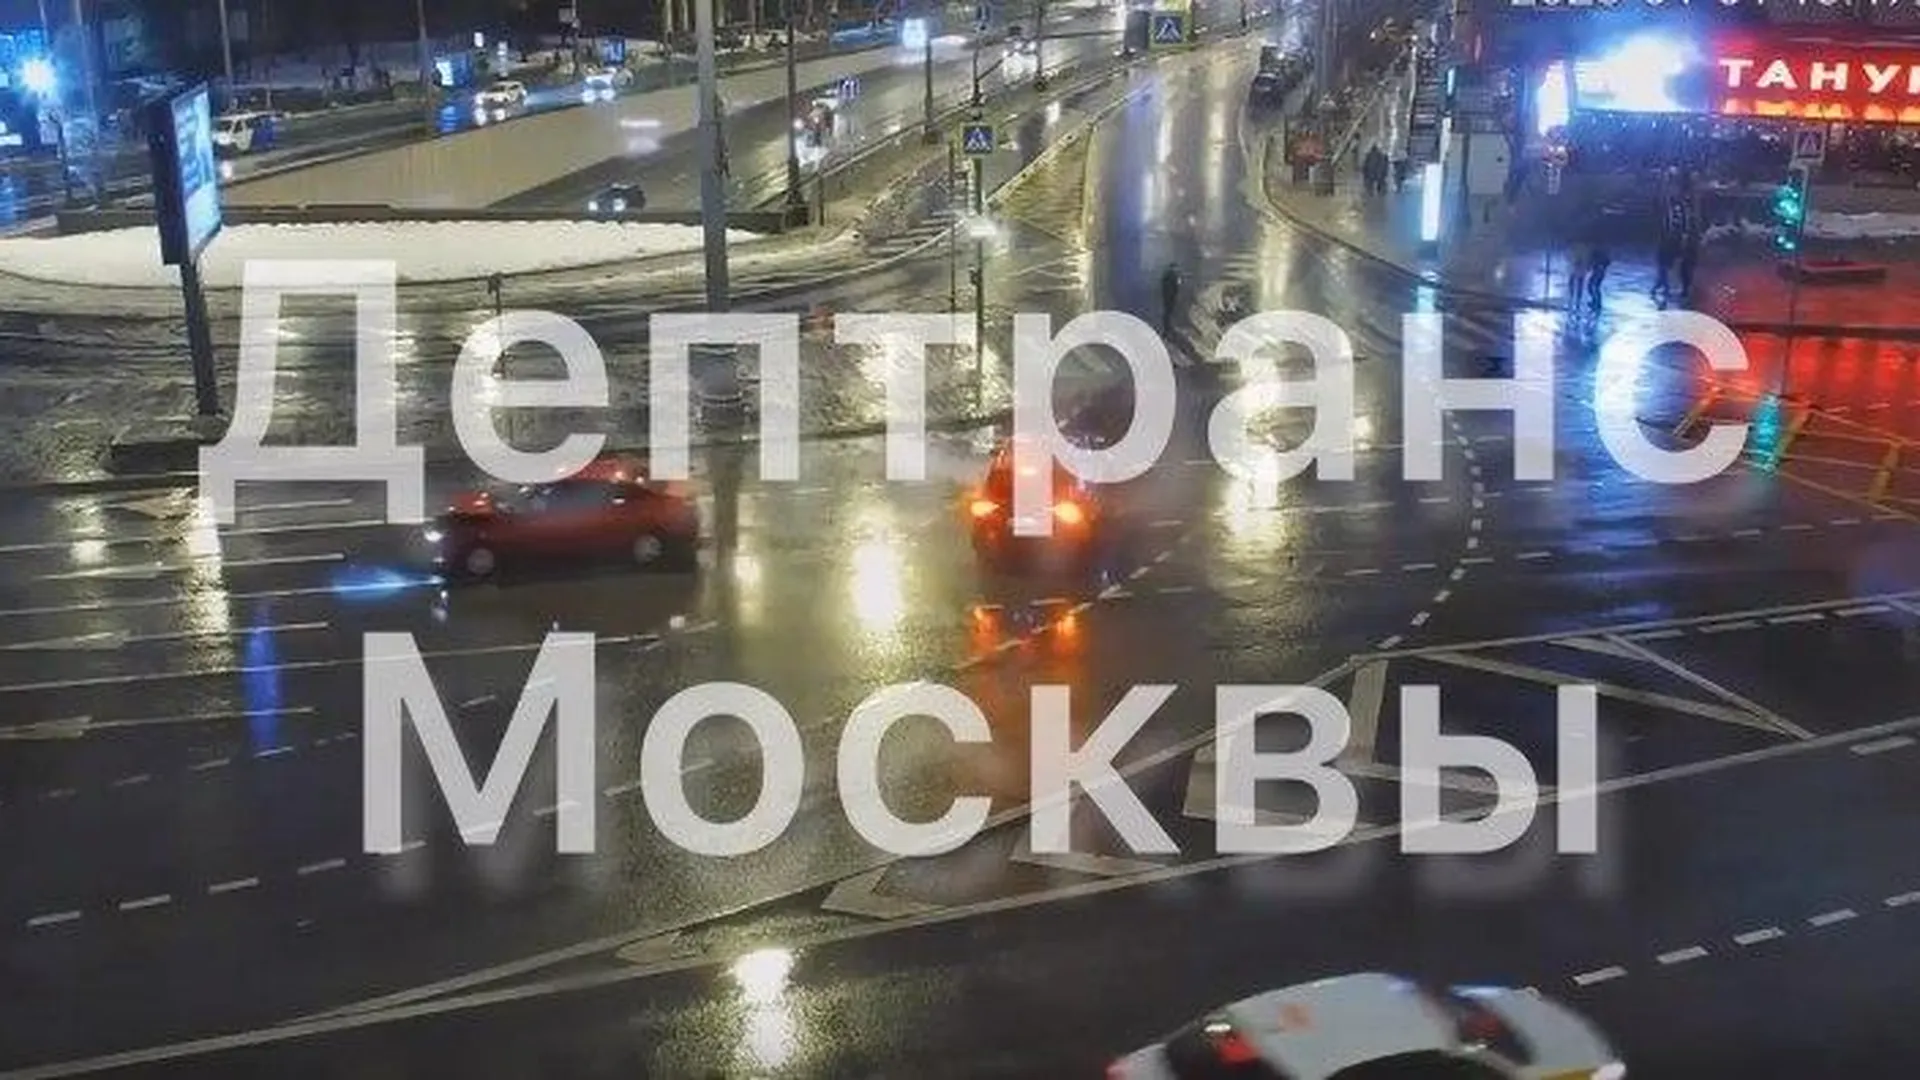 ДТП произошло на улице Большой Якиманке в Москве